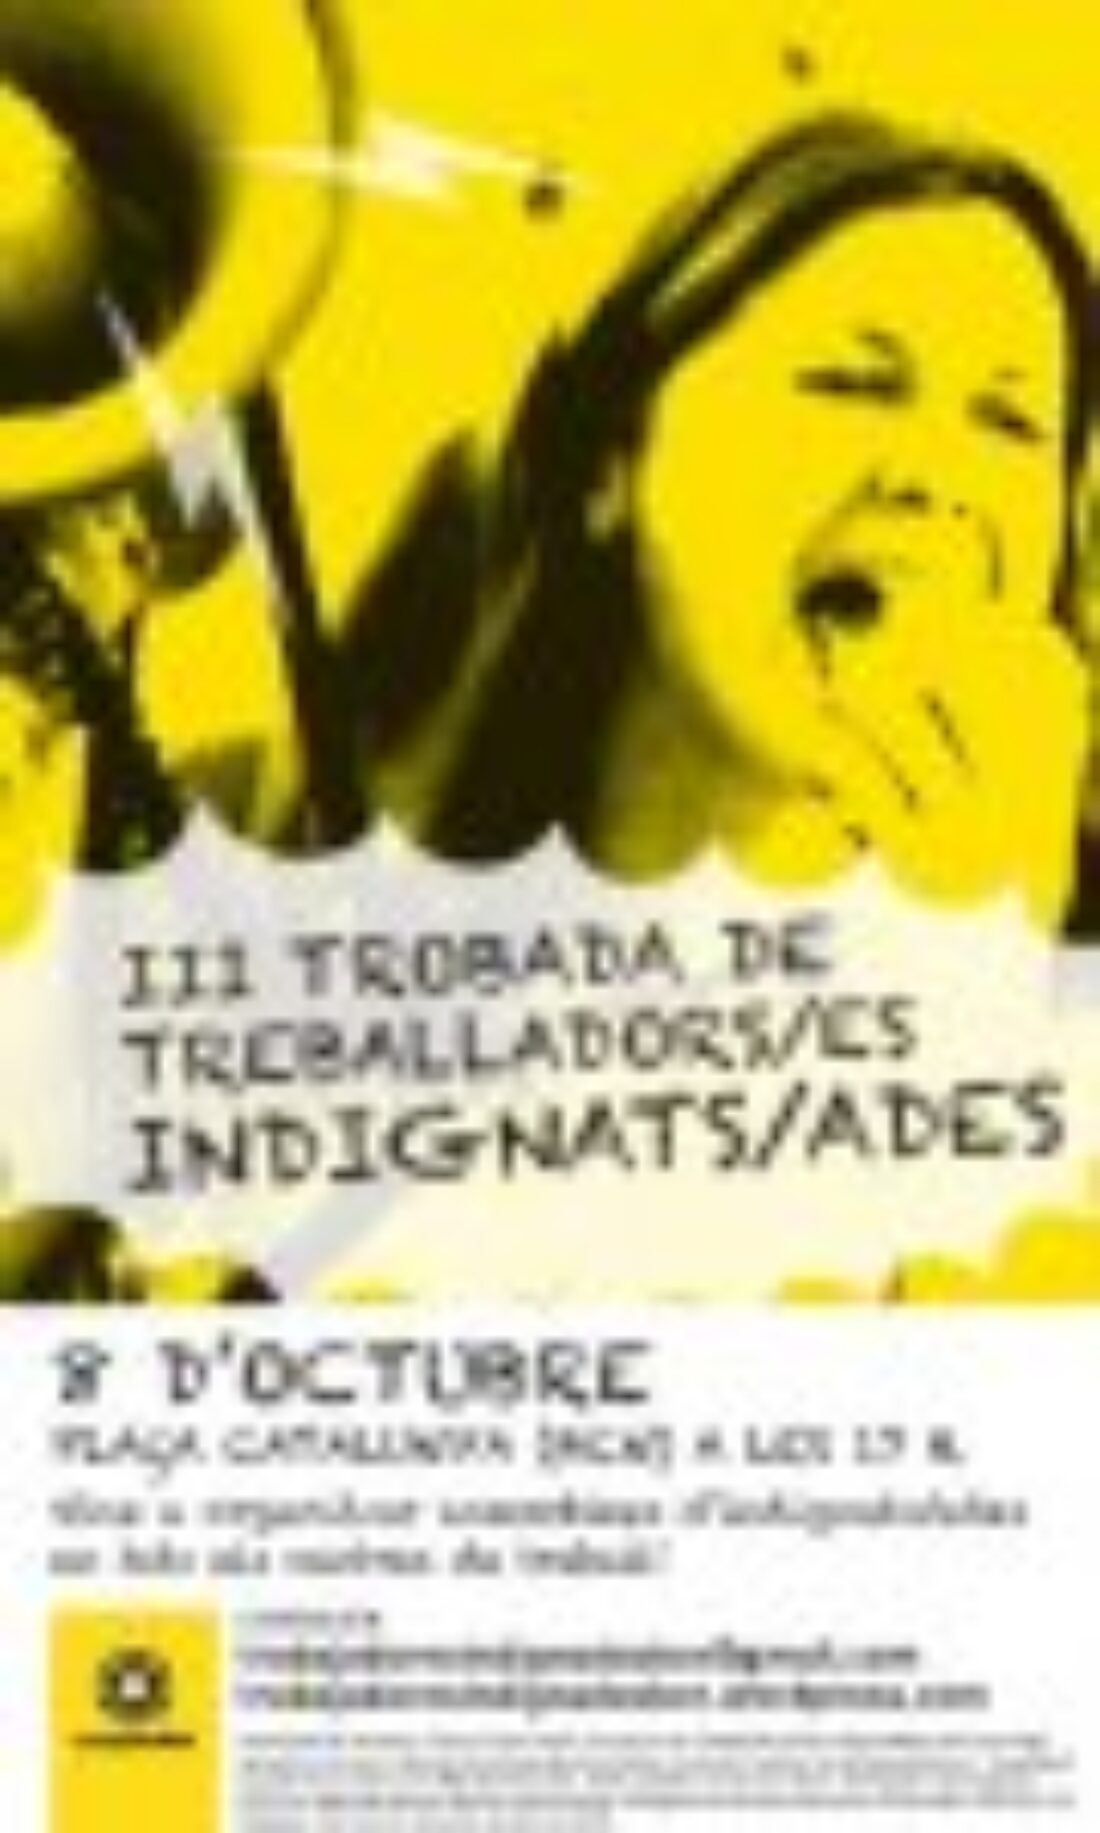 III encuentro de trabajador_s indignad_s en la Plaza Cataluña de Barcelona